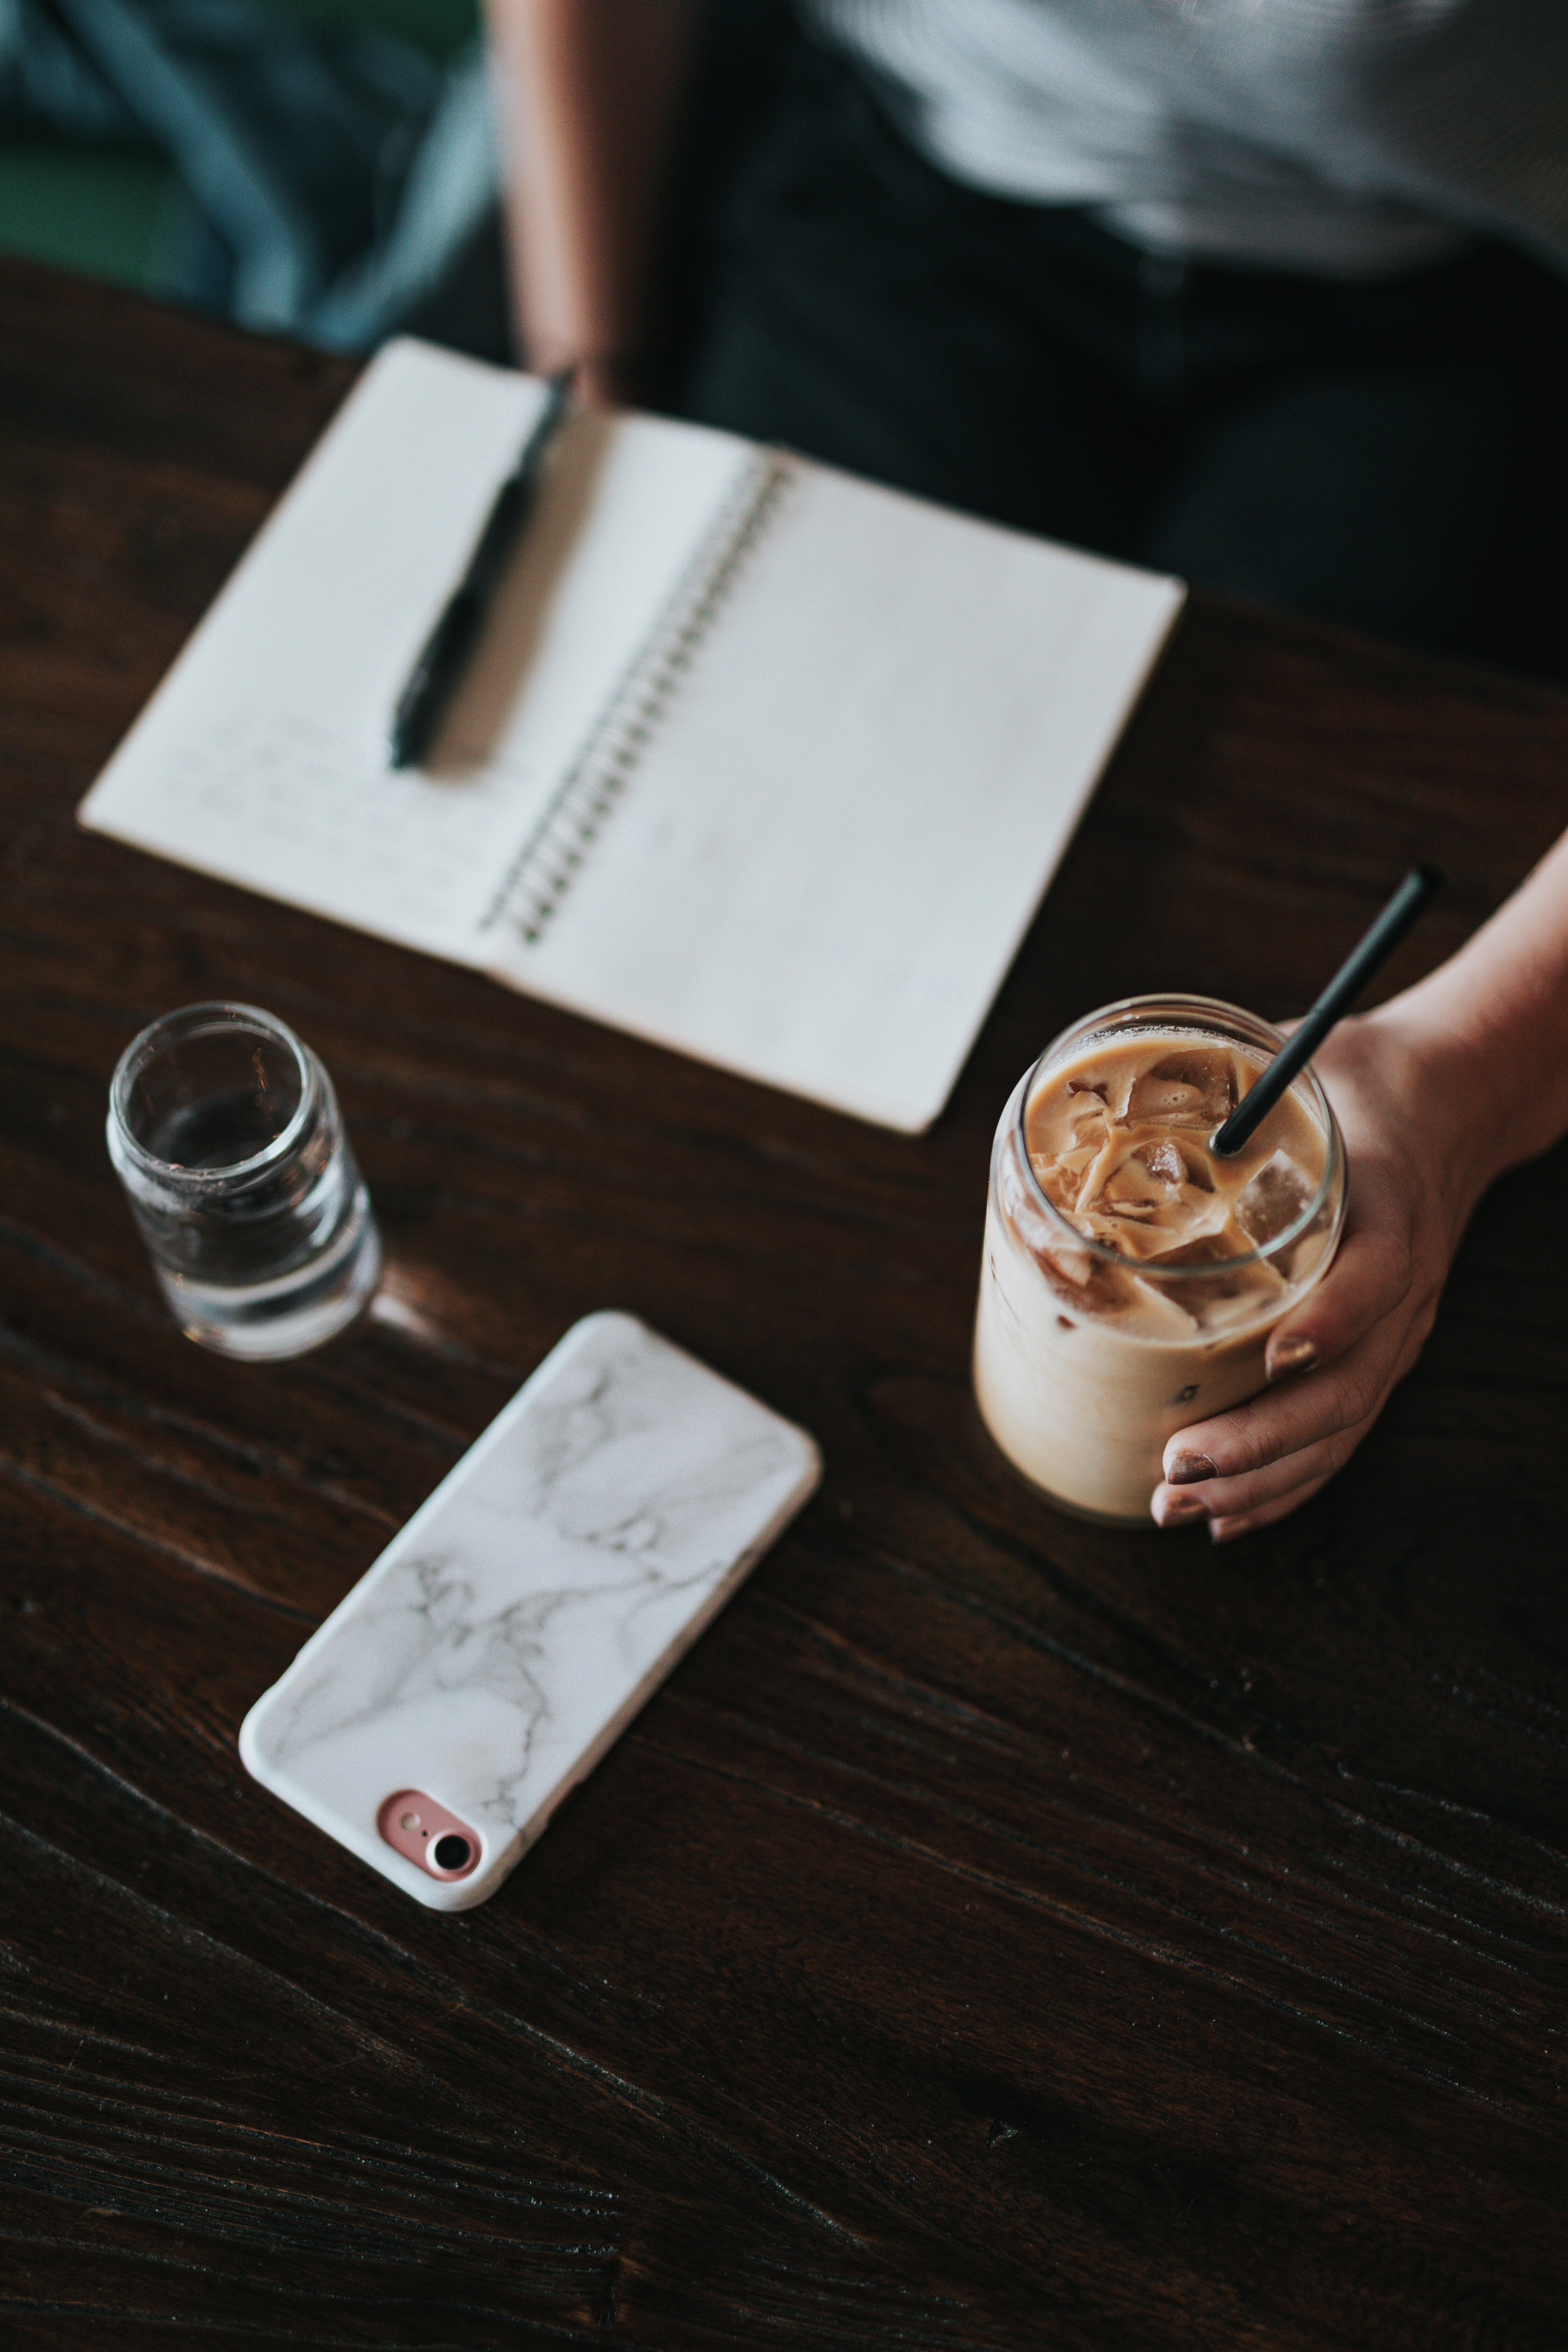 Et bord med en notatblokk, en penn, et vannglass, en iskaffe og en smarttelefon på. Det sitter en person ved bordet.